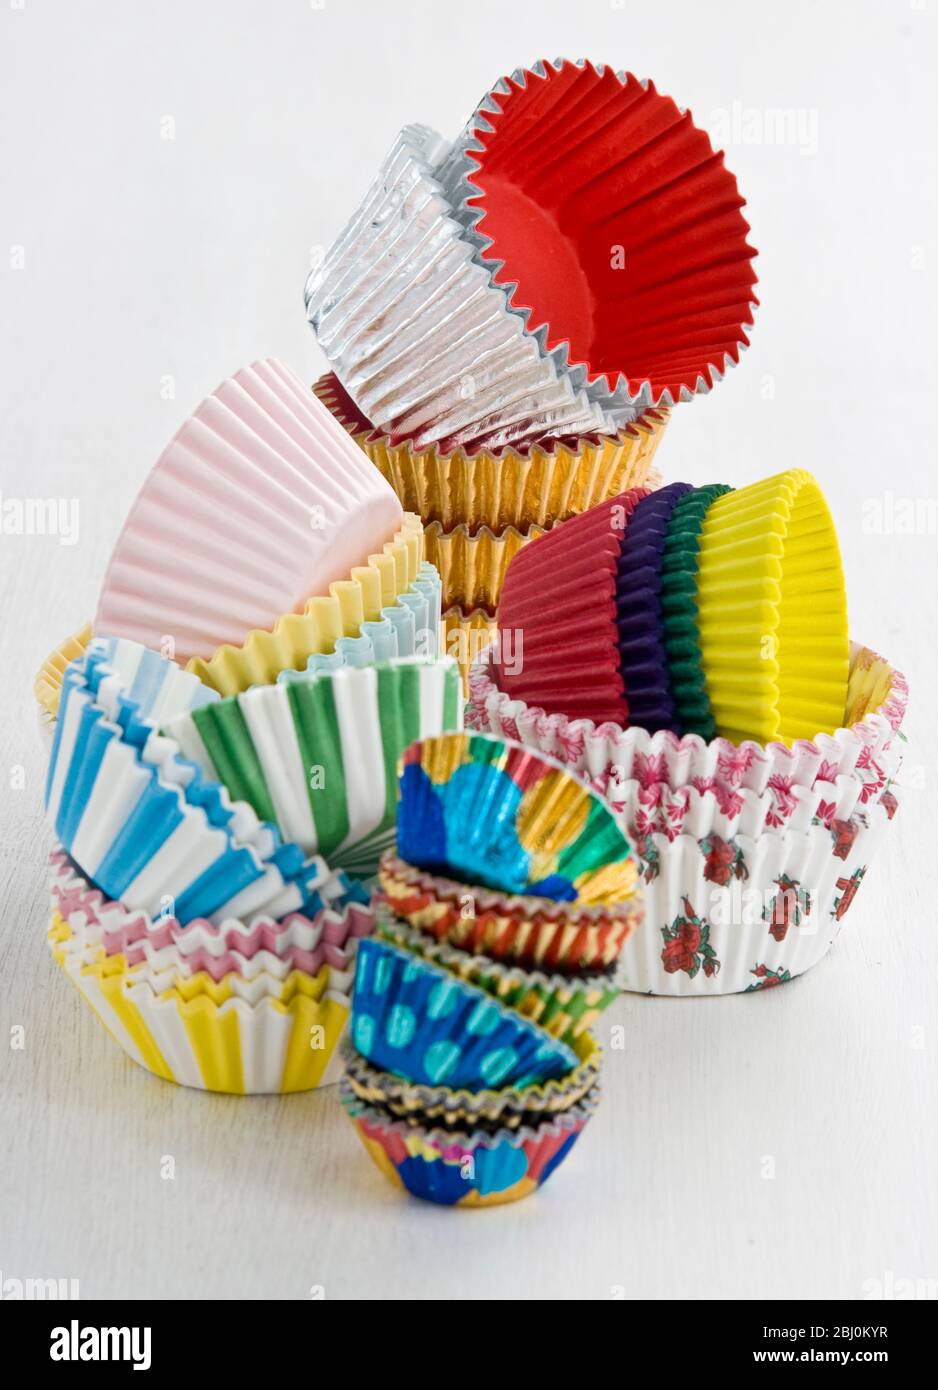 Stapel von dekorativen Papier- und Folienkuchen- und Muffin-Fällen - Stockfoto